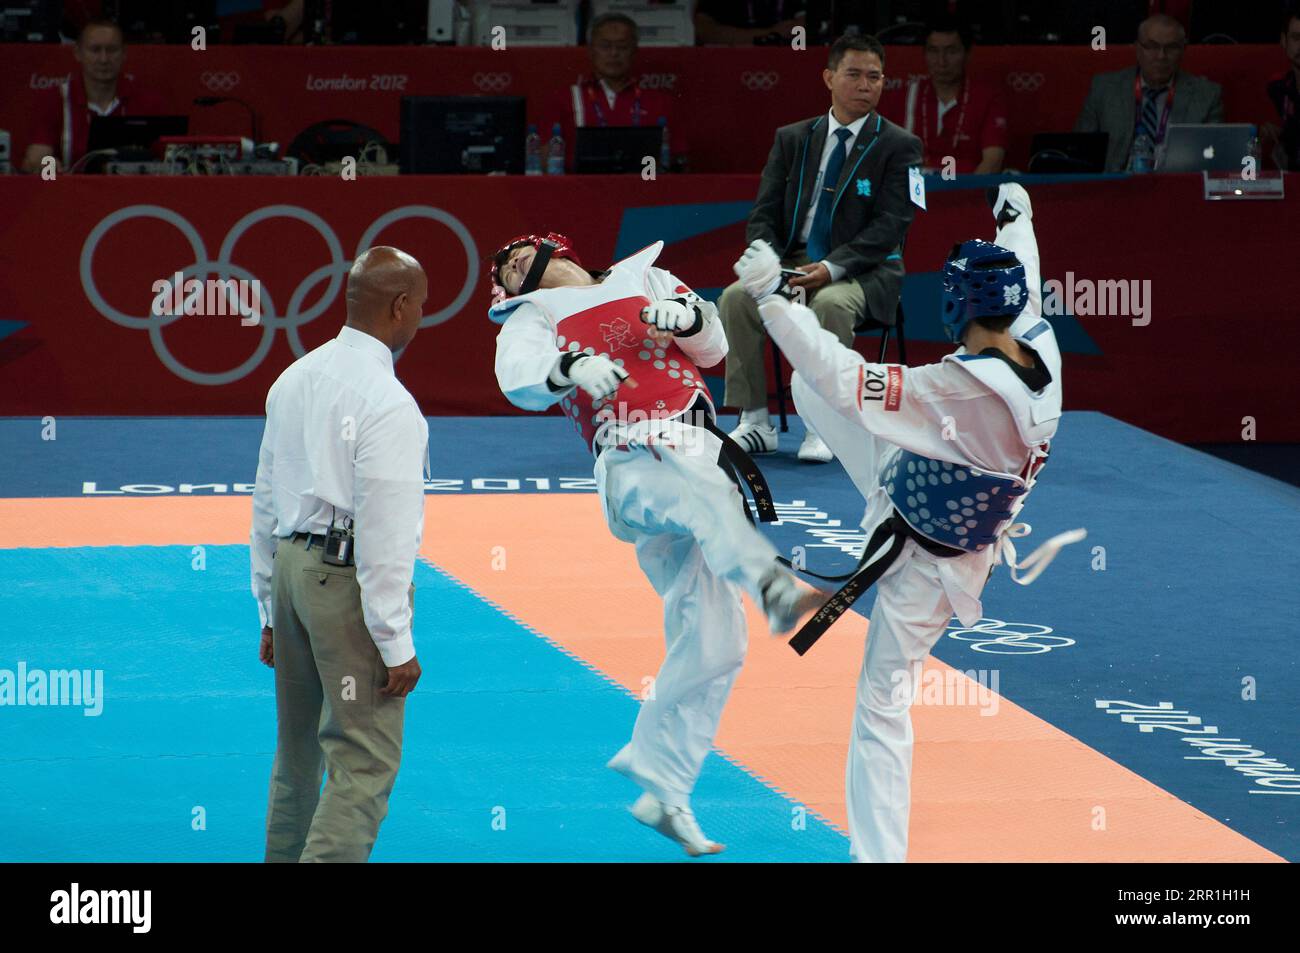 Taekwondo at the London 2012 Olympics Stock Photo